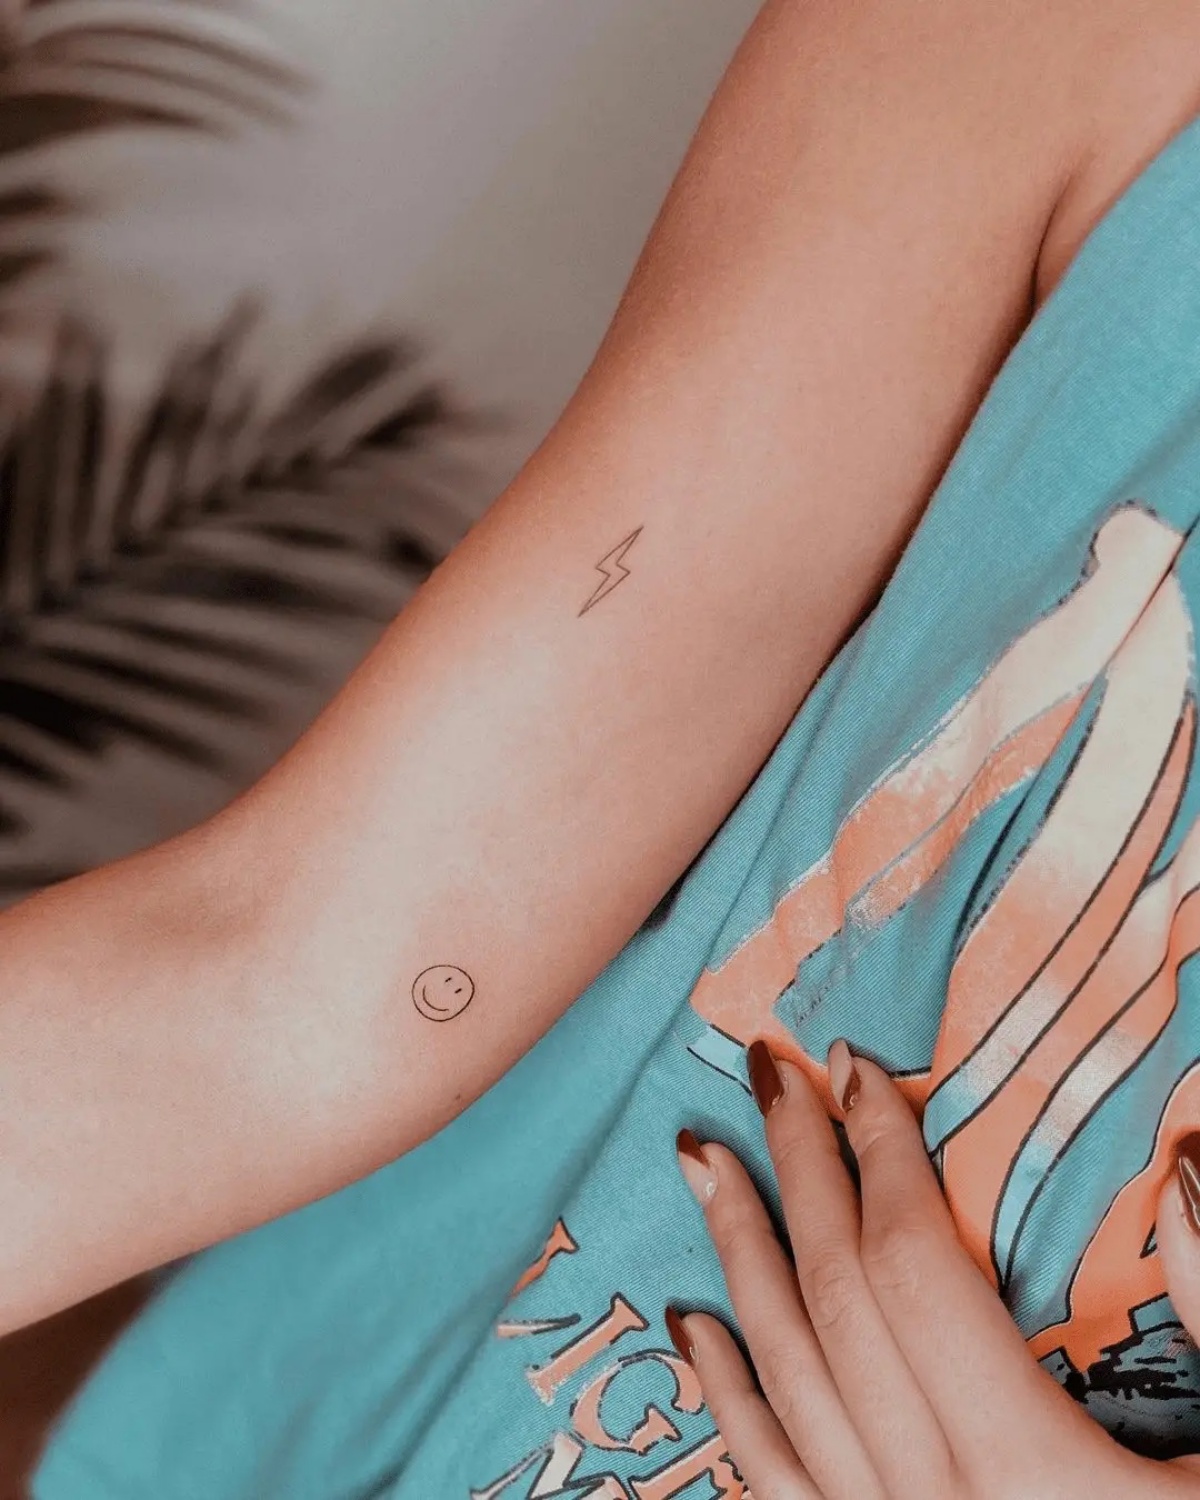 piccoli tatuaggi sul braccio faccina